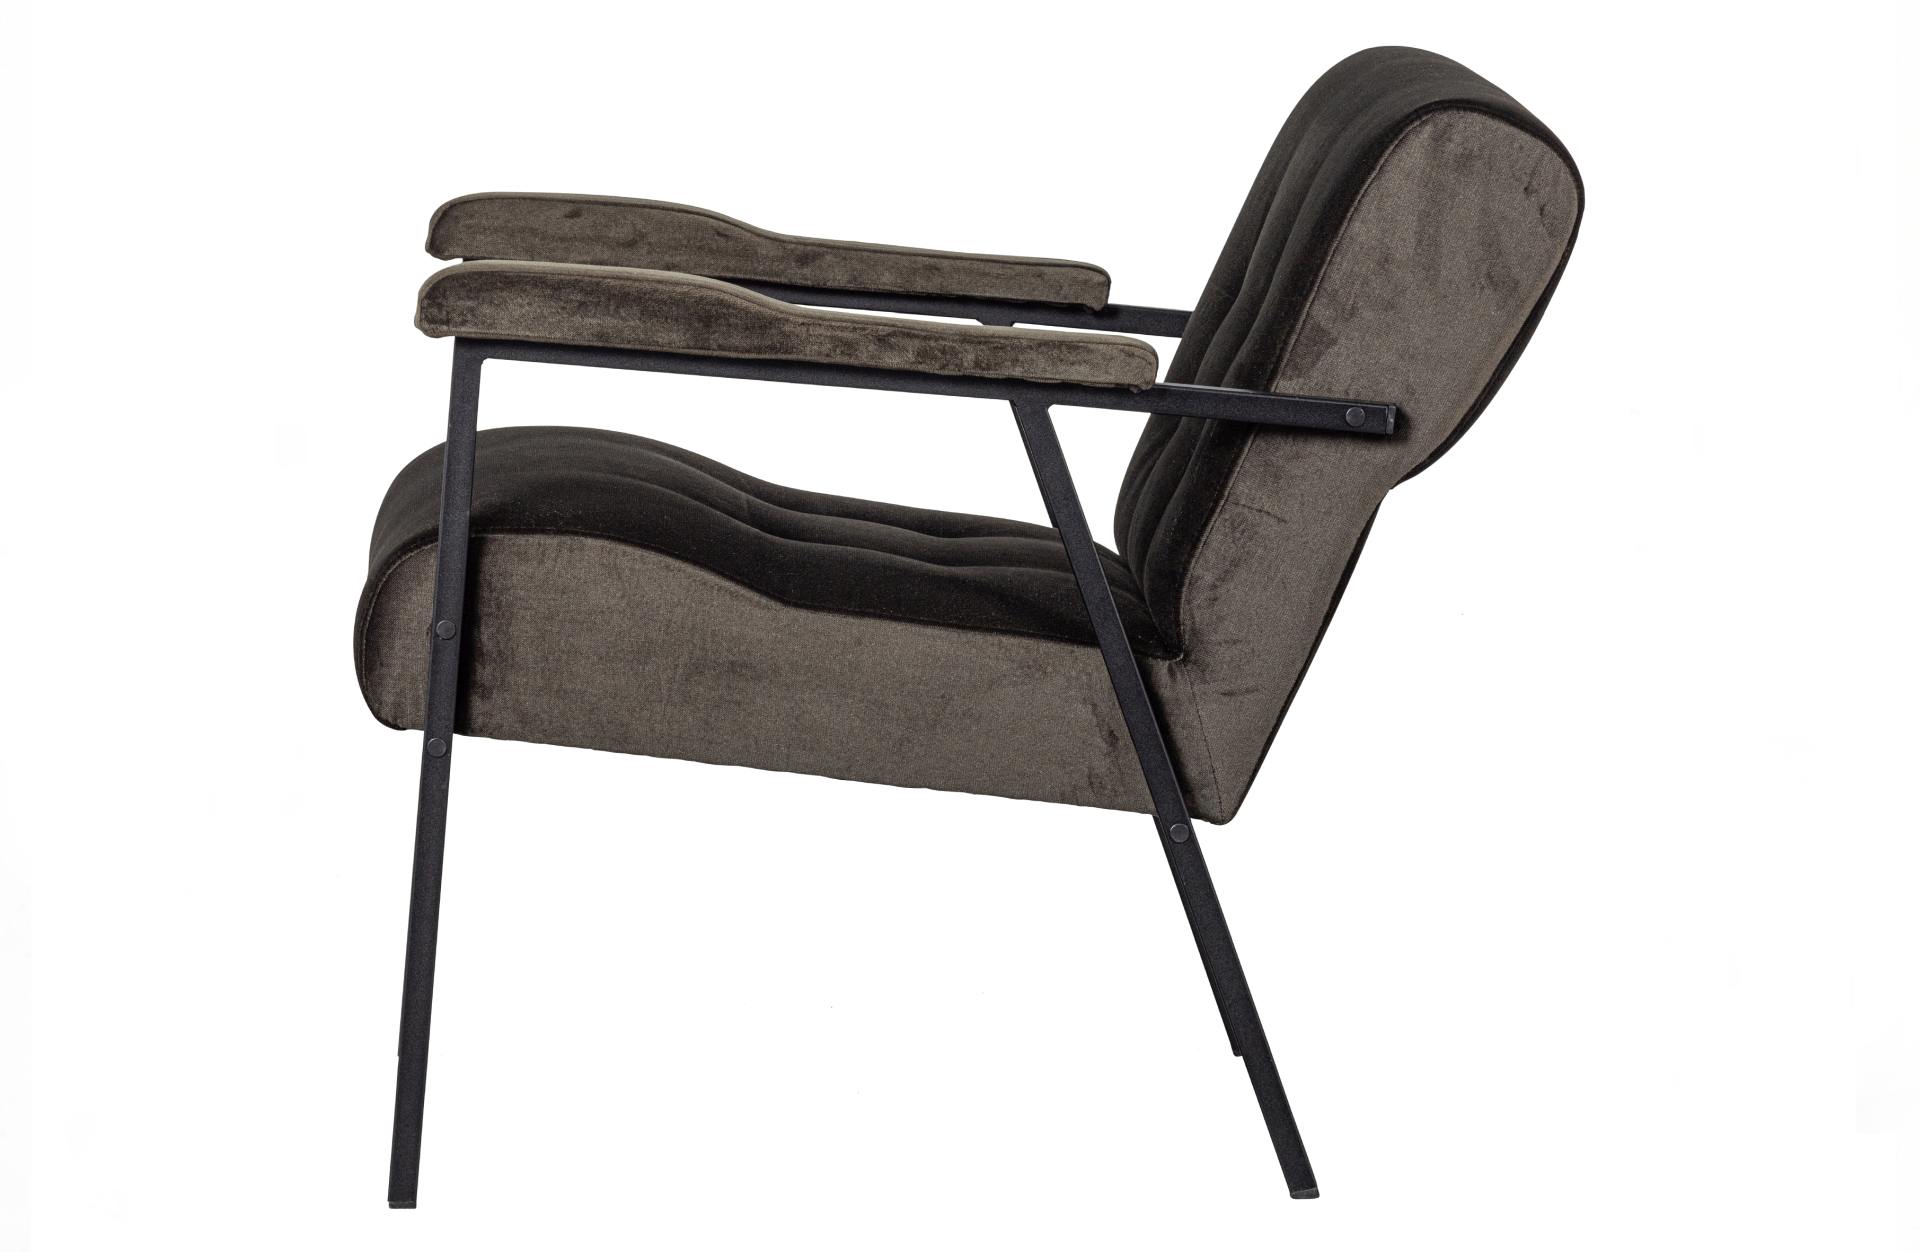 Der Sessel Scott überzeugt mit seinem klassischen Design. Gefertigt wurde er aus einem Samt-Stoff, welcher einen grünen Farbton besitzt. Das Gestell ist aus Metall und hat eine schwarze Farbe. Die Sitzhöhe beträgt 48 cm.